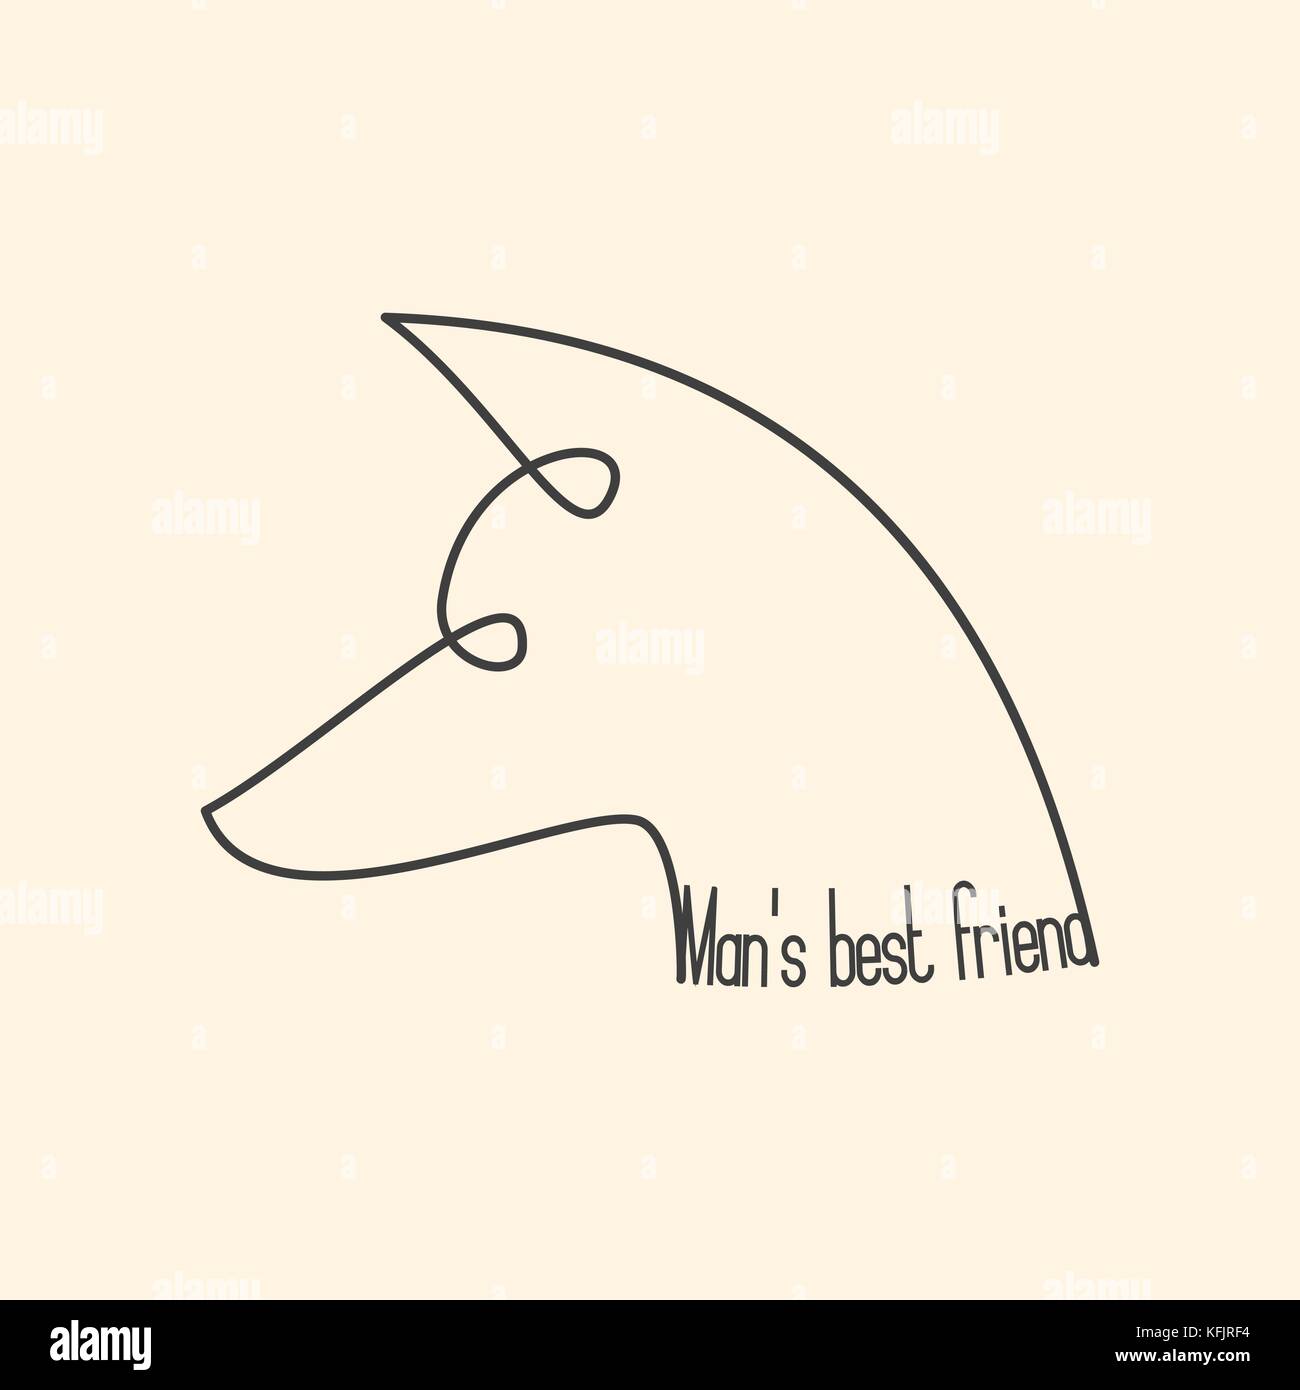 Pin on ~ Man's Best Friend ~